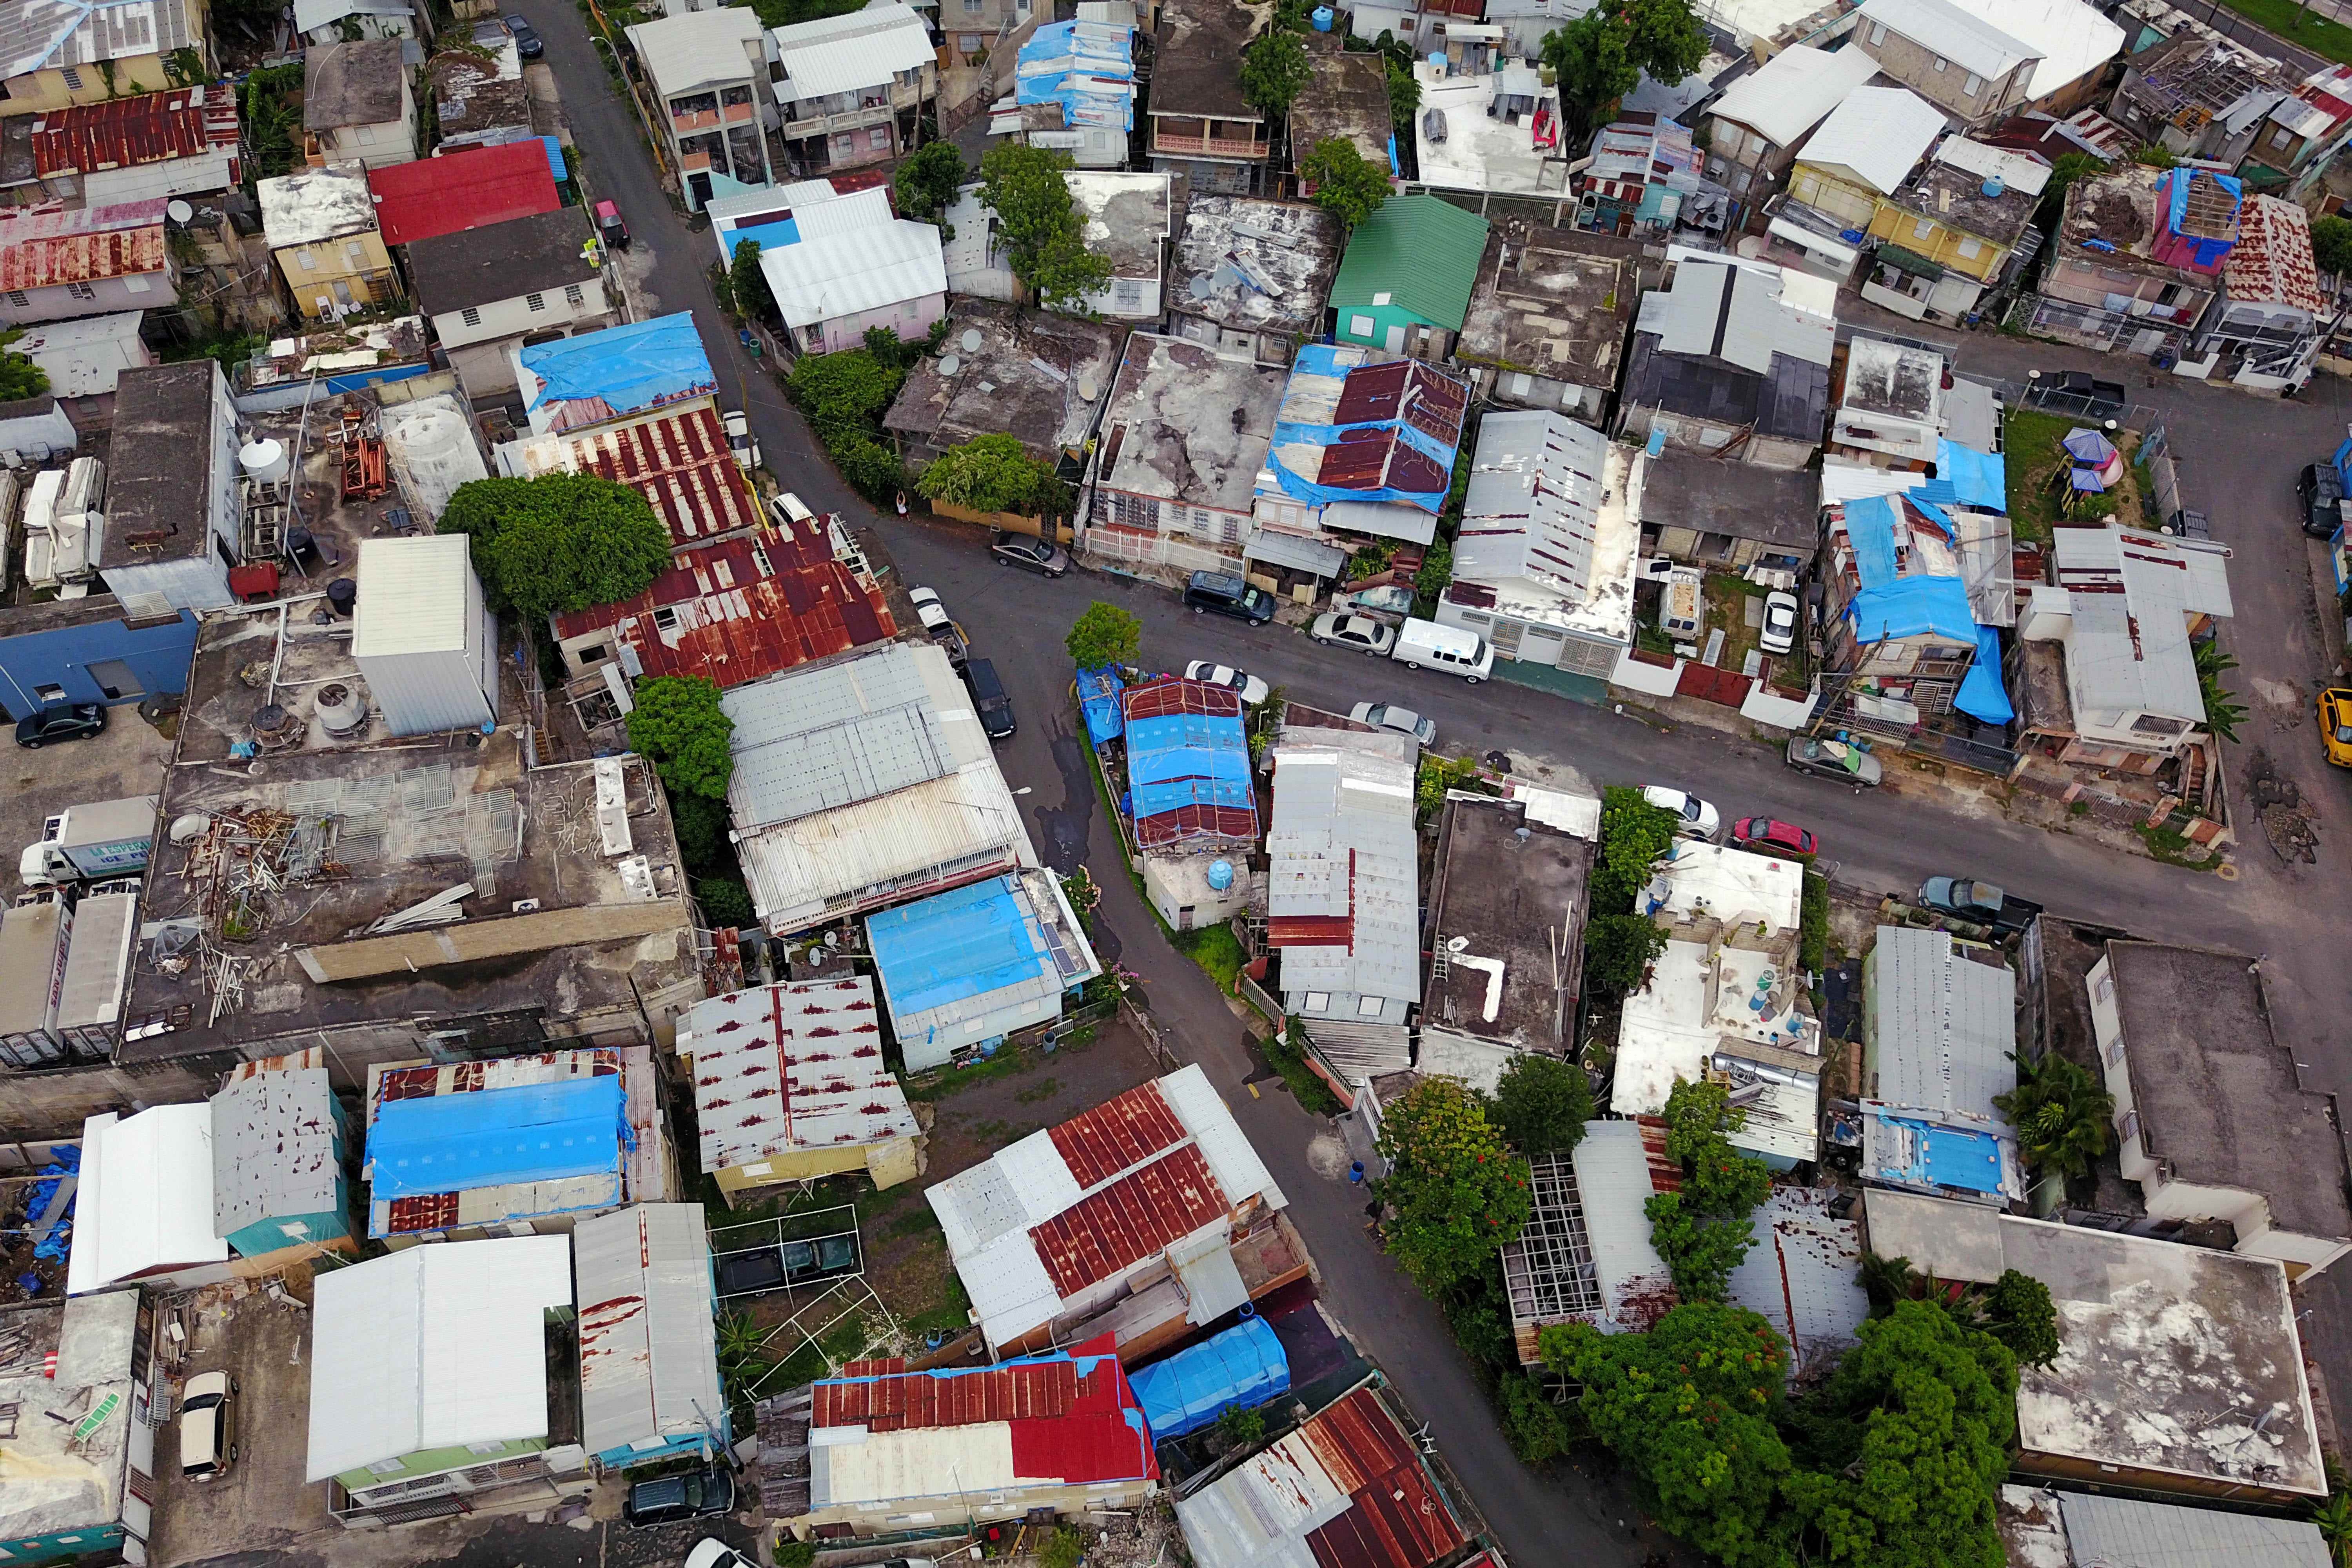 Blaue Planen, die von der FEMA ausgegeben wurden, bedecken mehrere Dächer, zwei Jahre nachdem der Hurrikan Maria die Insel in San Juan, Puerto Rico, am 18. September 2019 getroffen hatte.